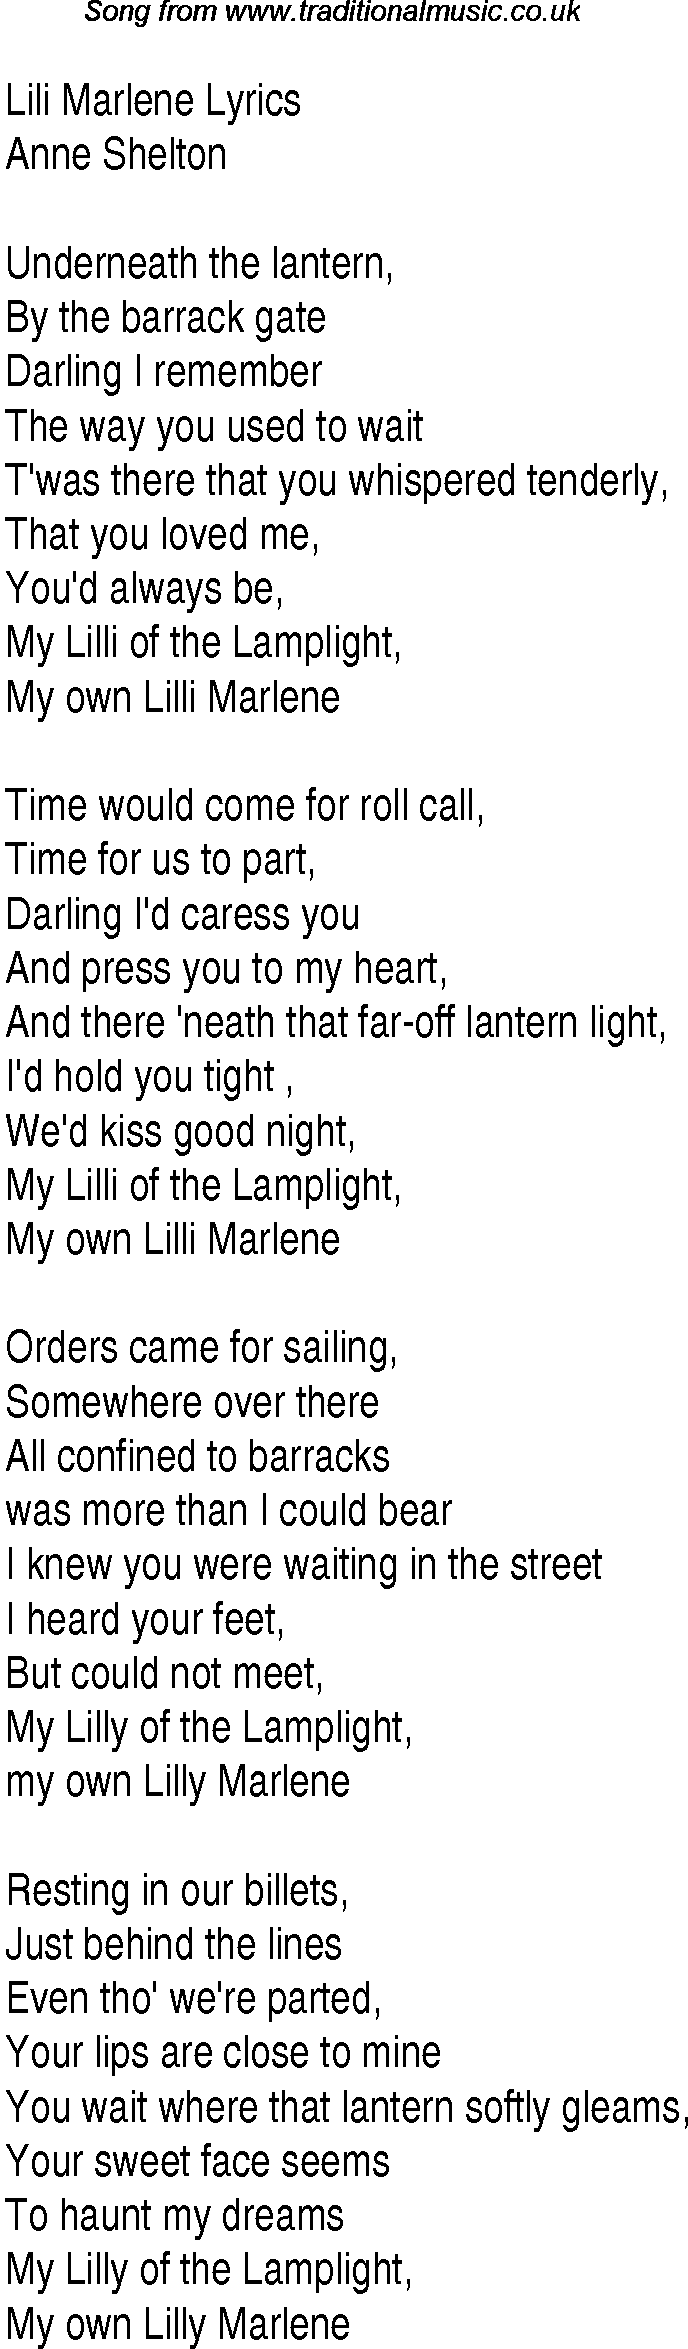 1940s top songs - lyrics for Lili Marlene(Anne Shelton)